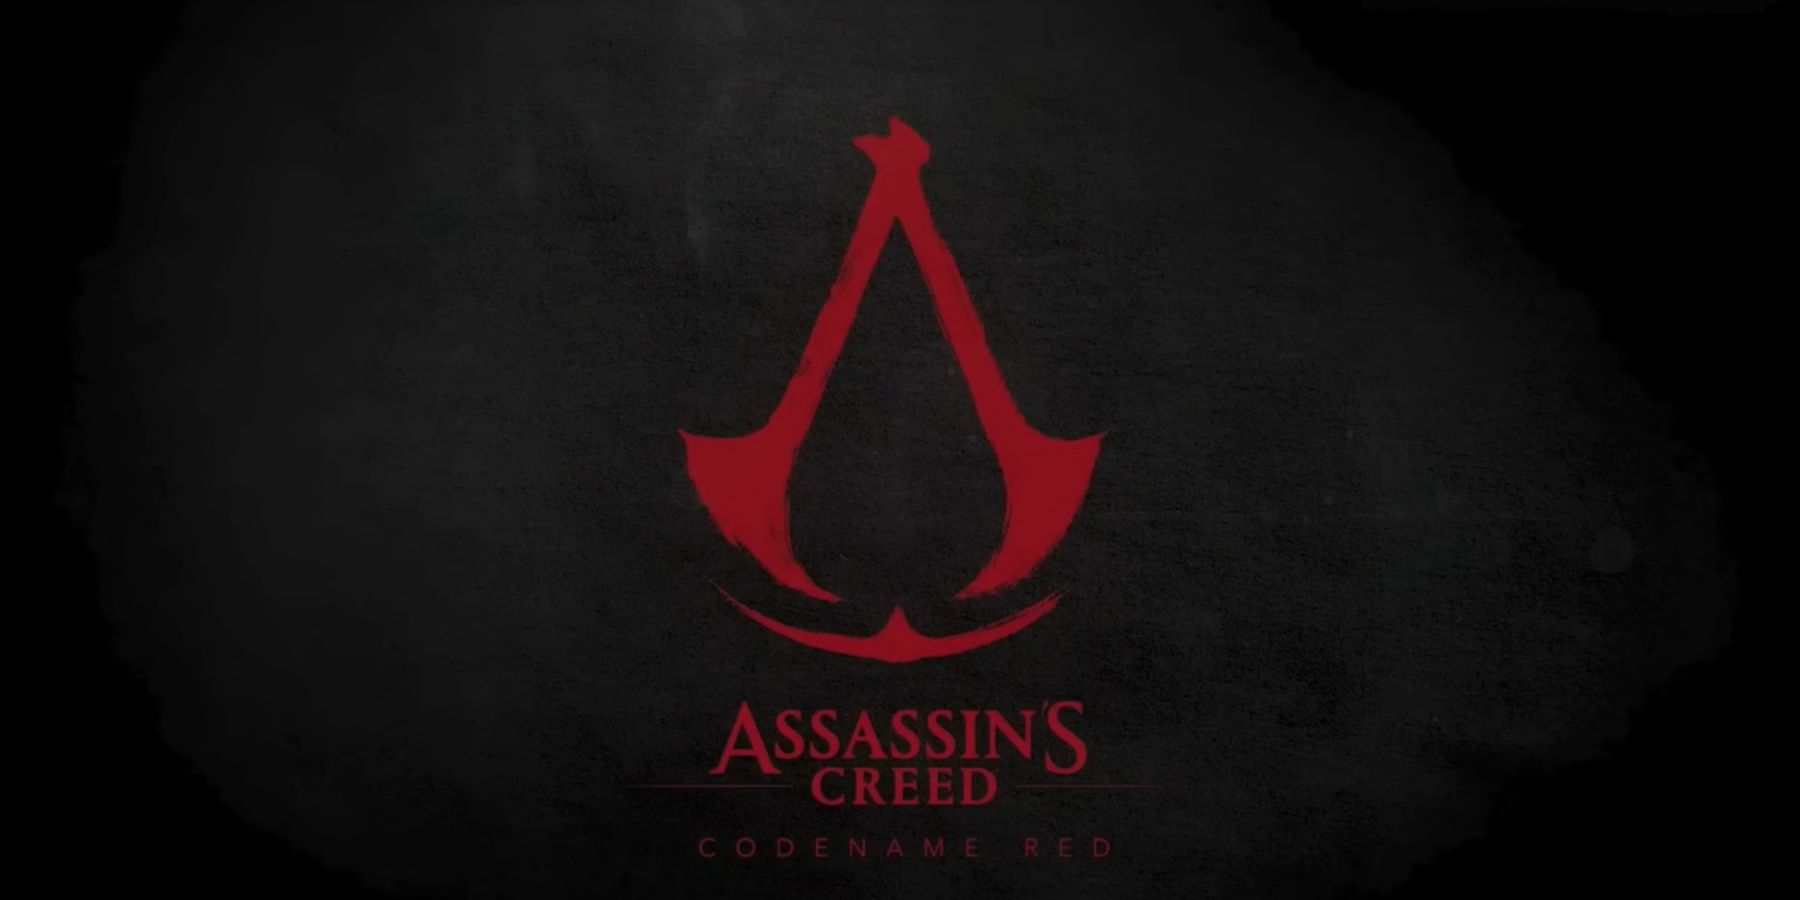 Pemaju tuntutan pekerja Ubisoft telah meninggalkan syarikat kerana pengarah merah Creed Assassin